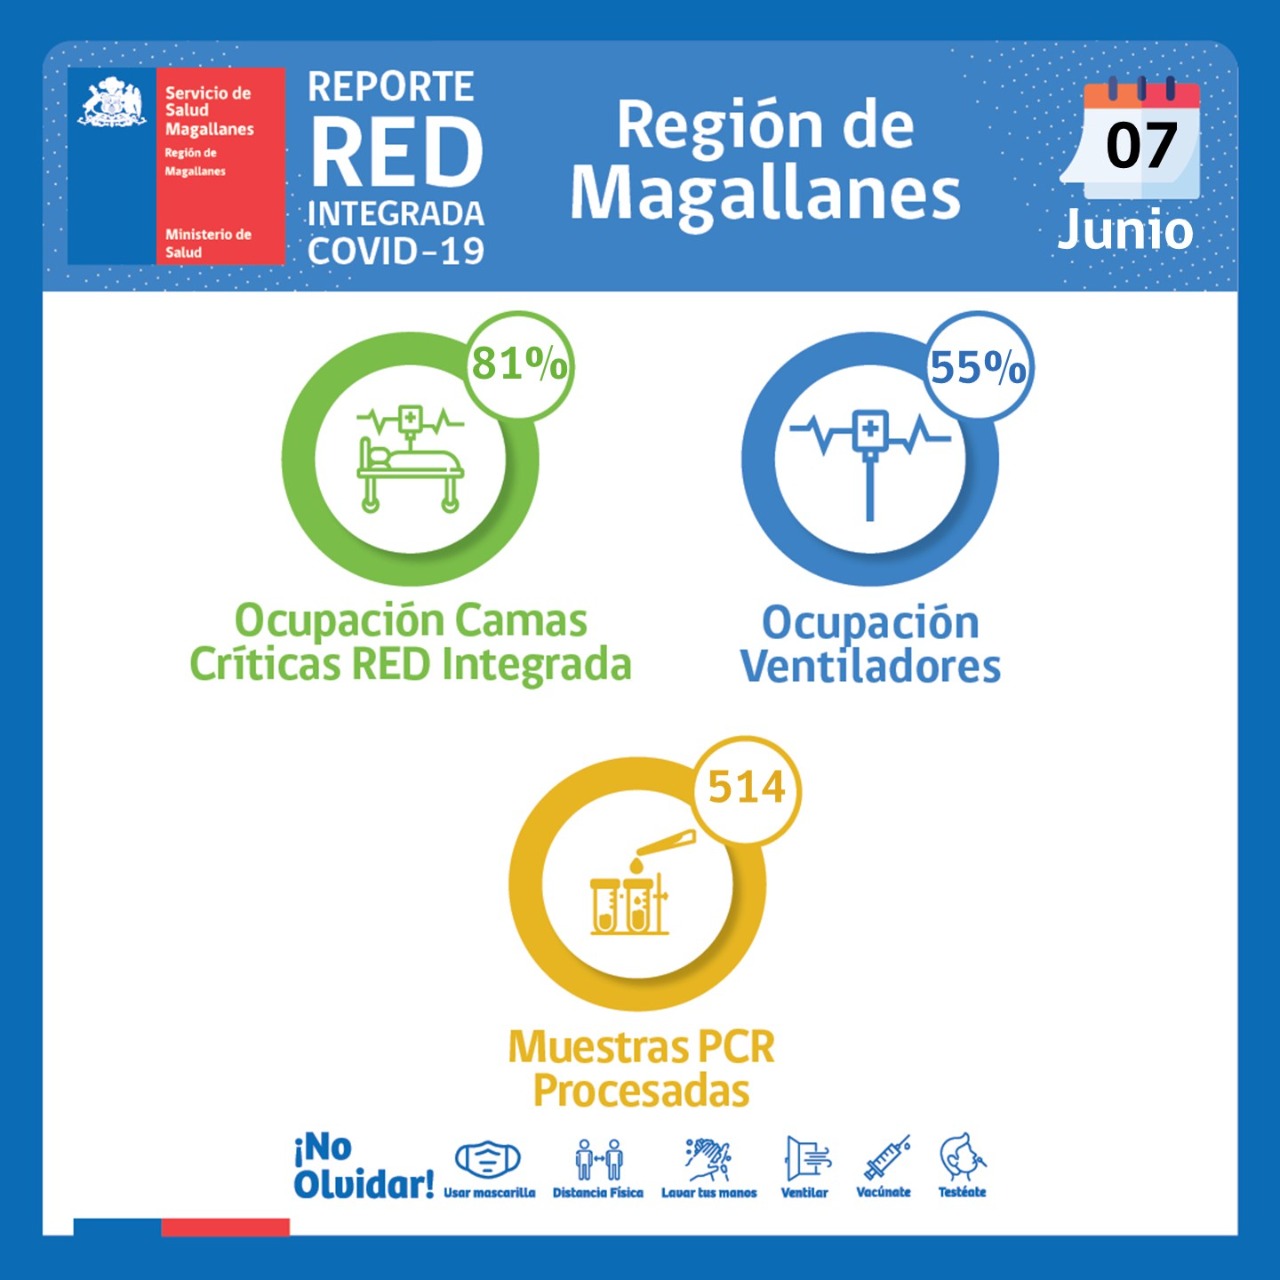 Situación de la red integrada covid19 en Magallanes | Martes 7 de junio